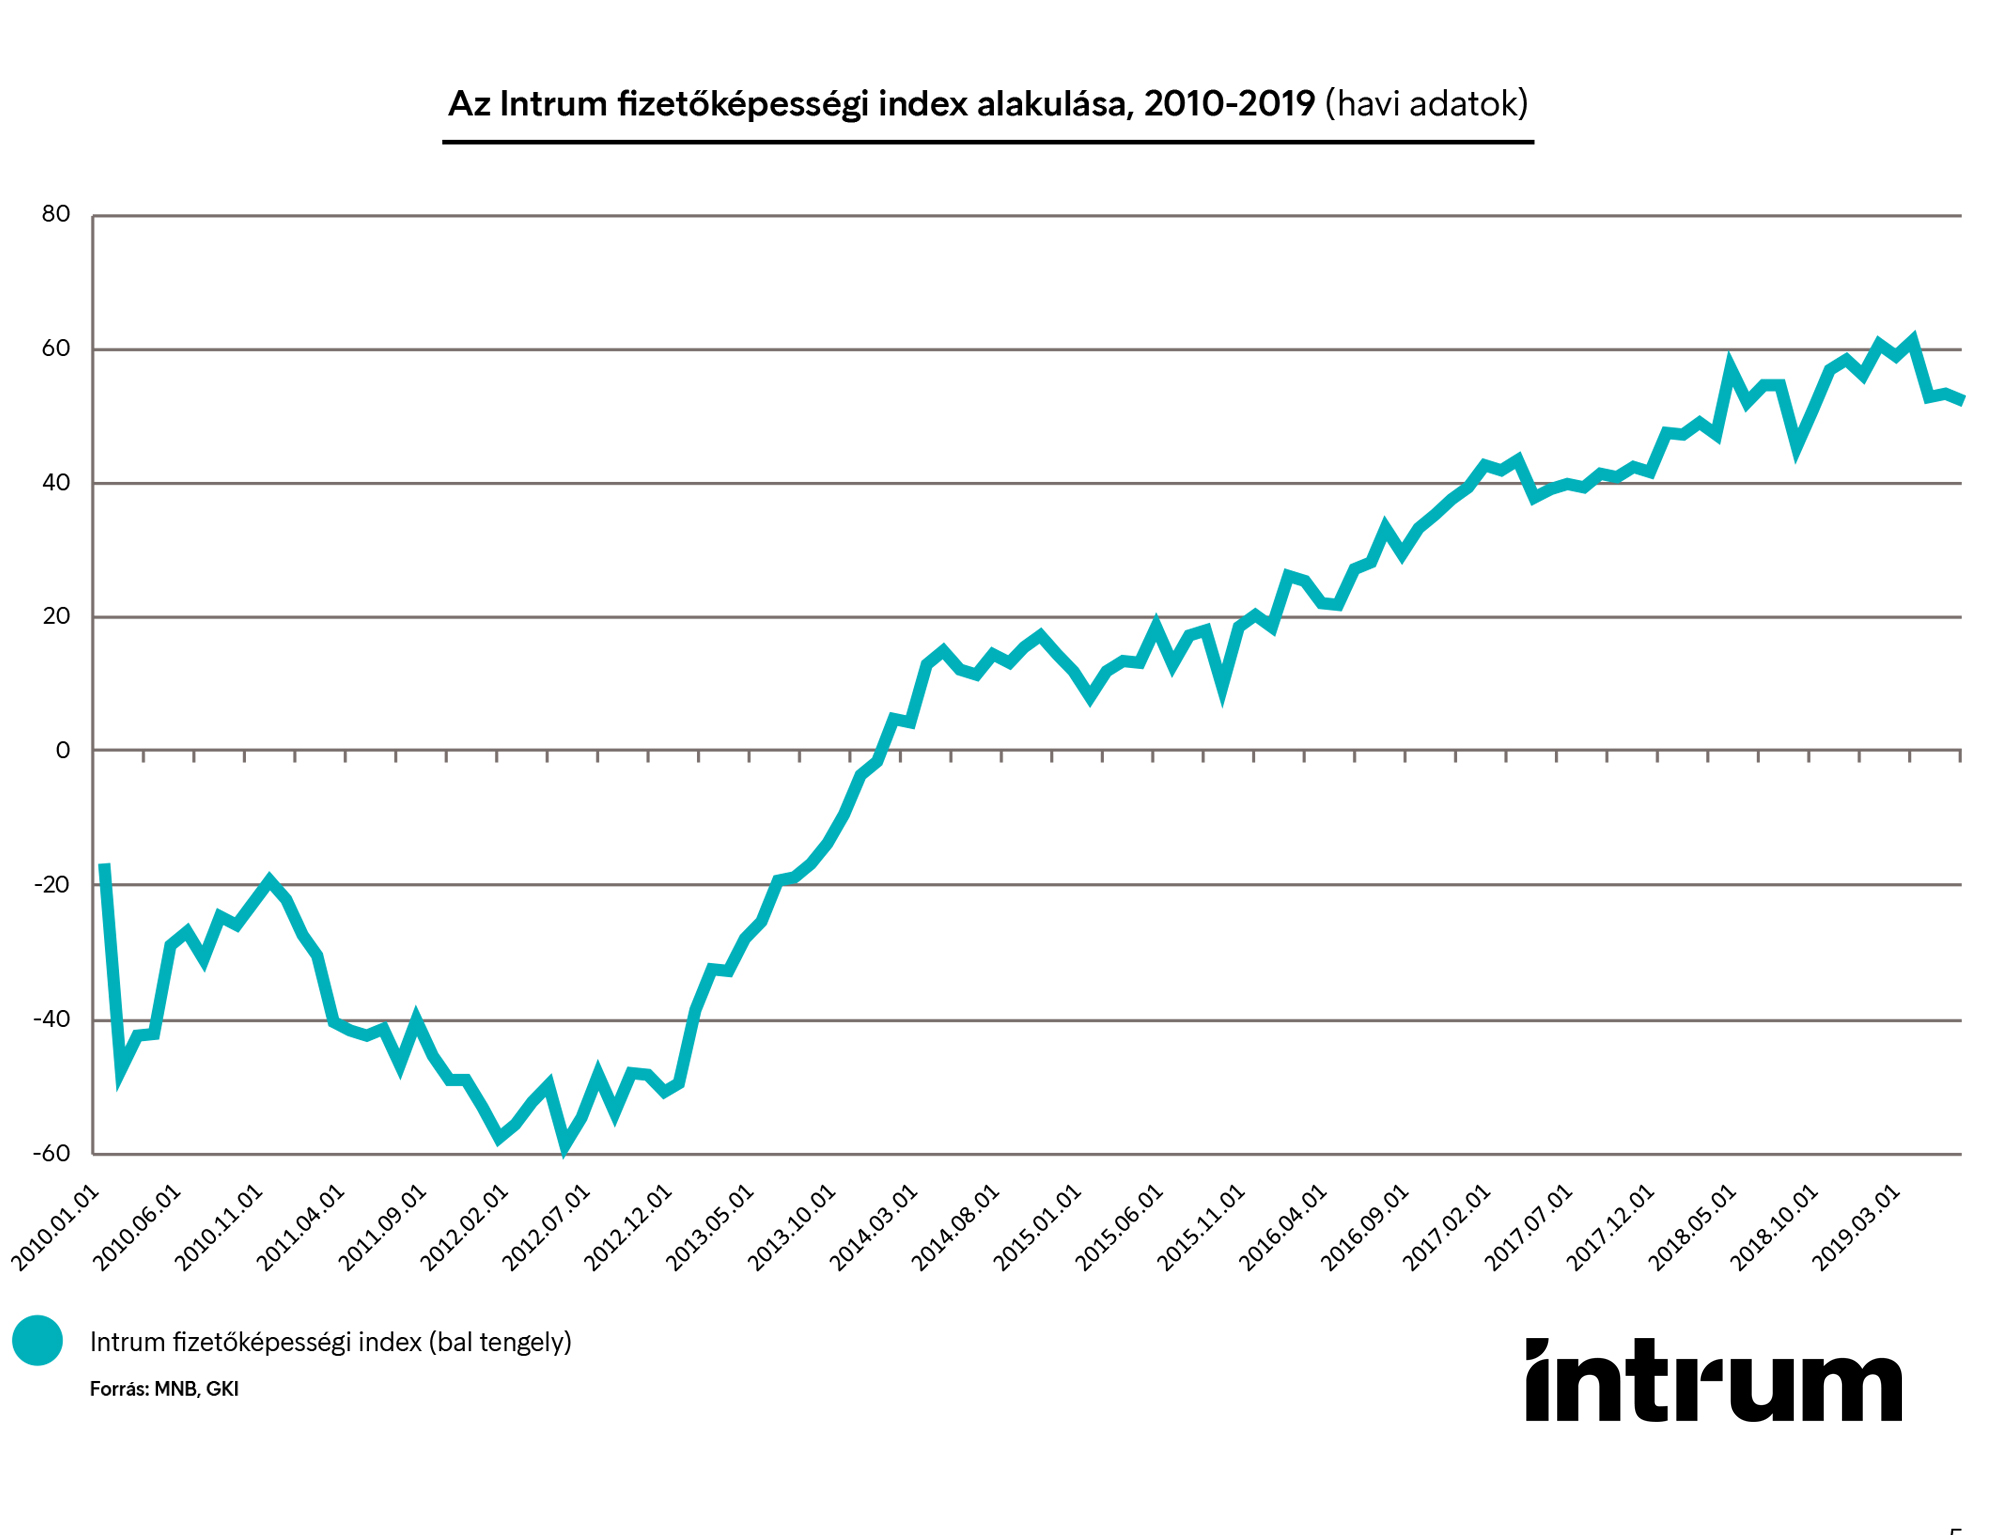 IFI201909_index